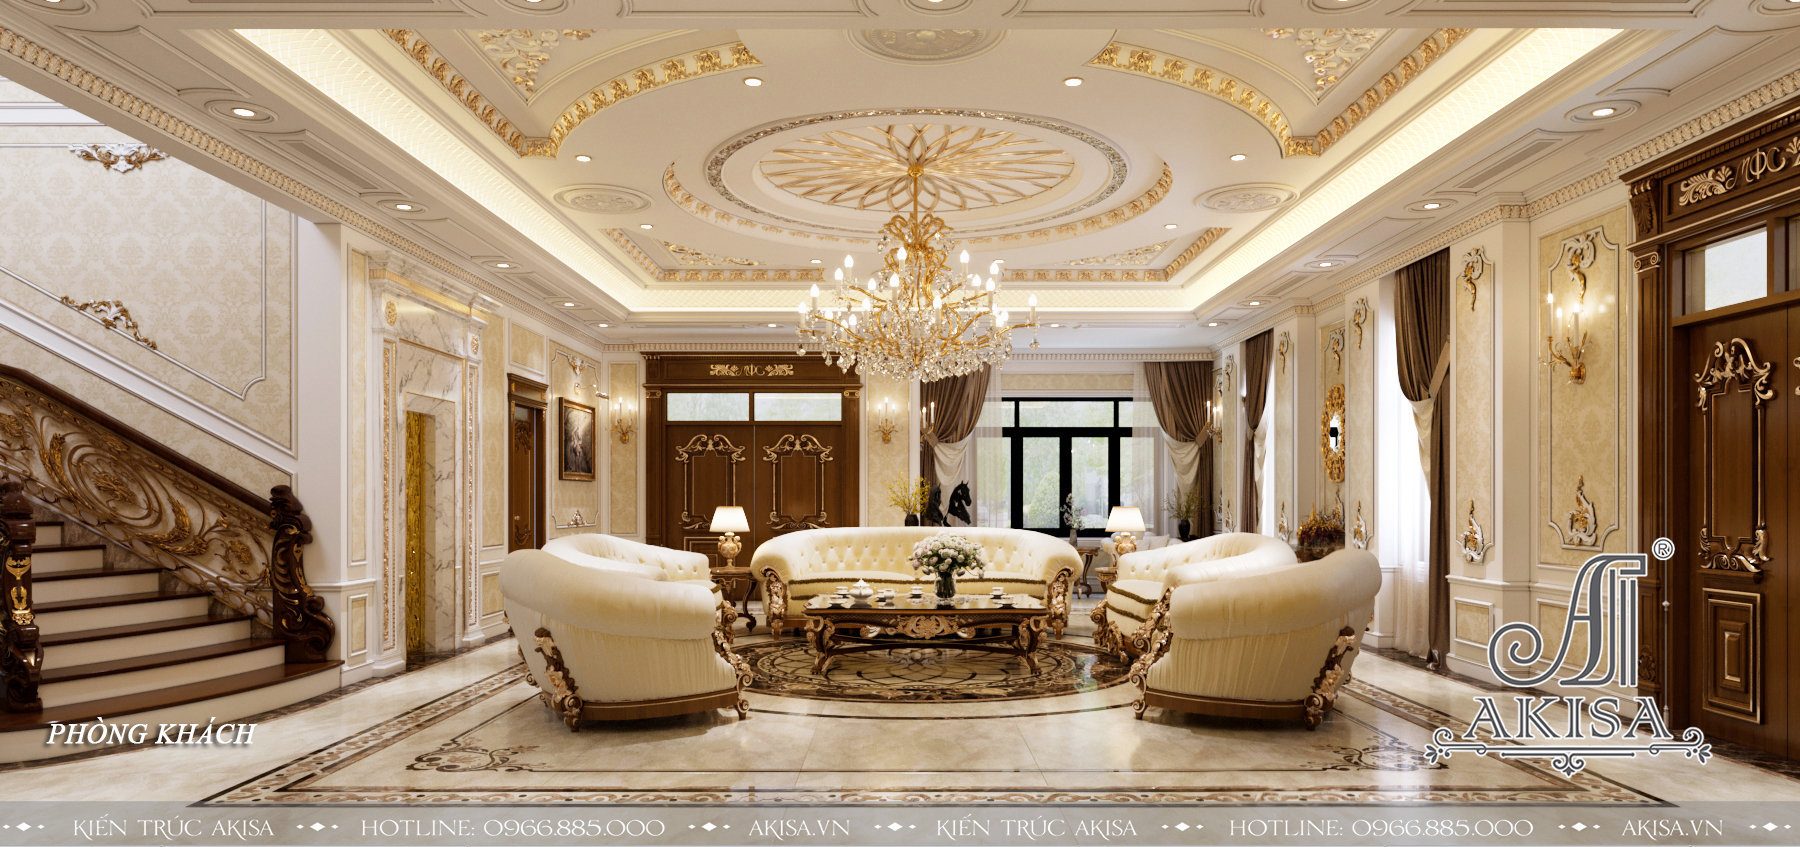 Phòng khách biệt thự 3 tầng thiết kế sang trọng, lộng lẫy với gam màu be kết hợp với các họa tiết trang trí mạ vàng của các đồ vật trang trí nội thất, diện tường, trần, đèn chùm